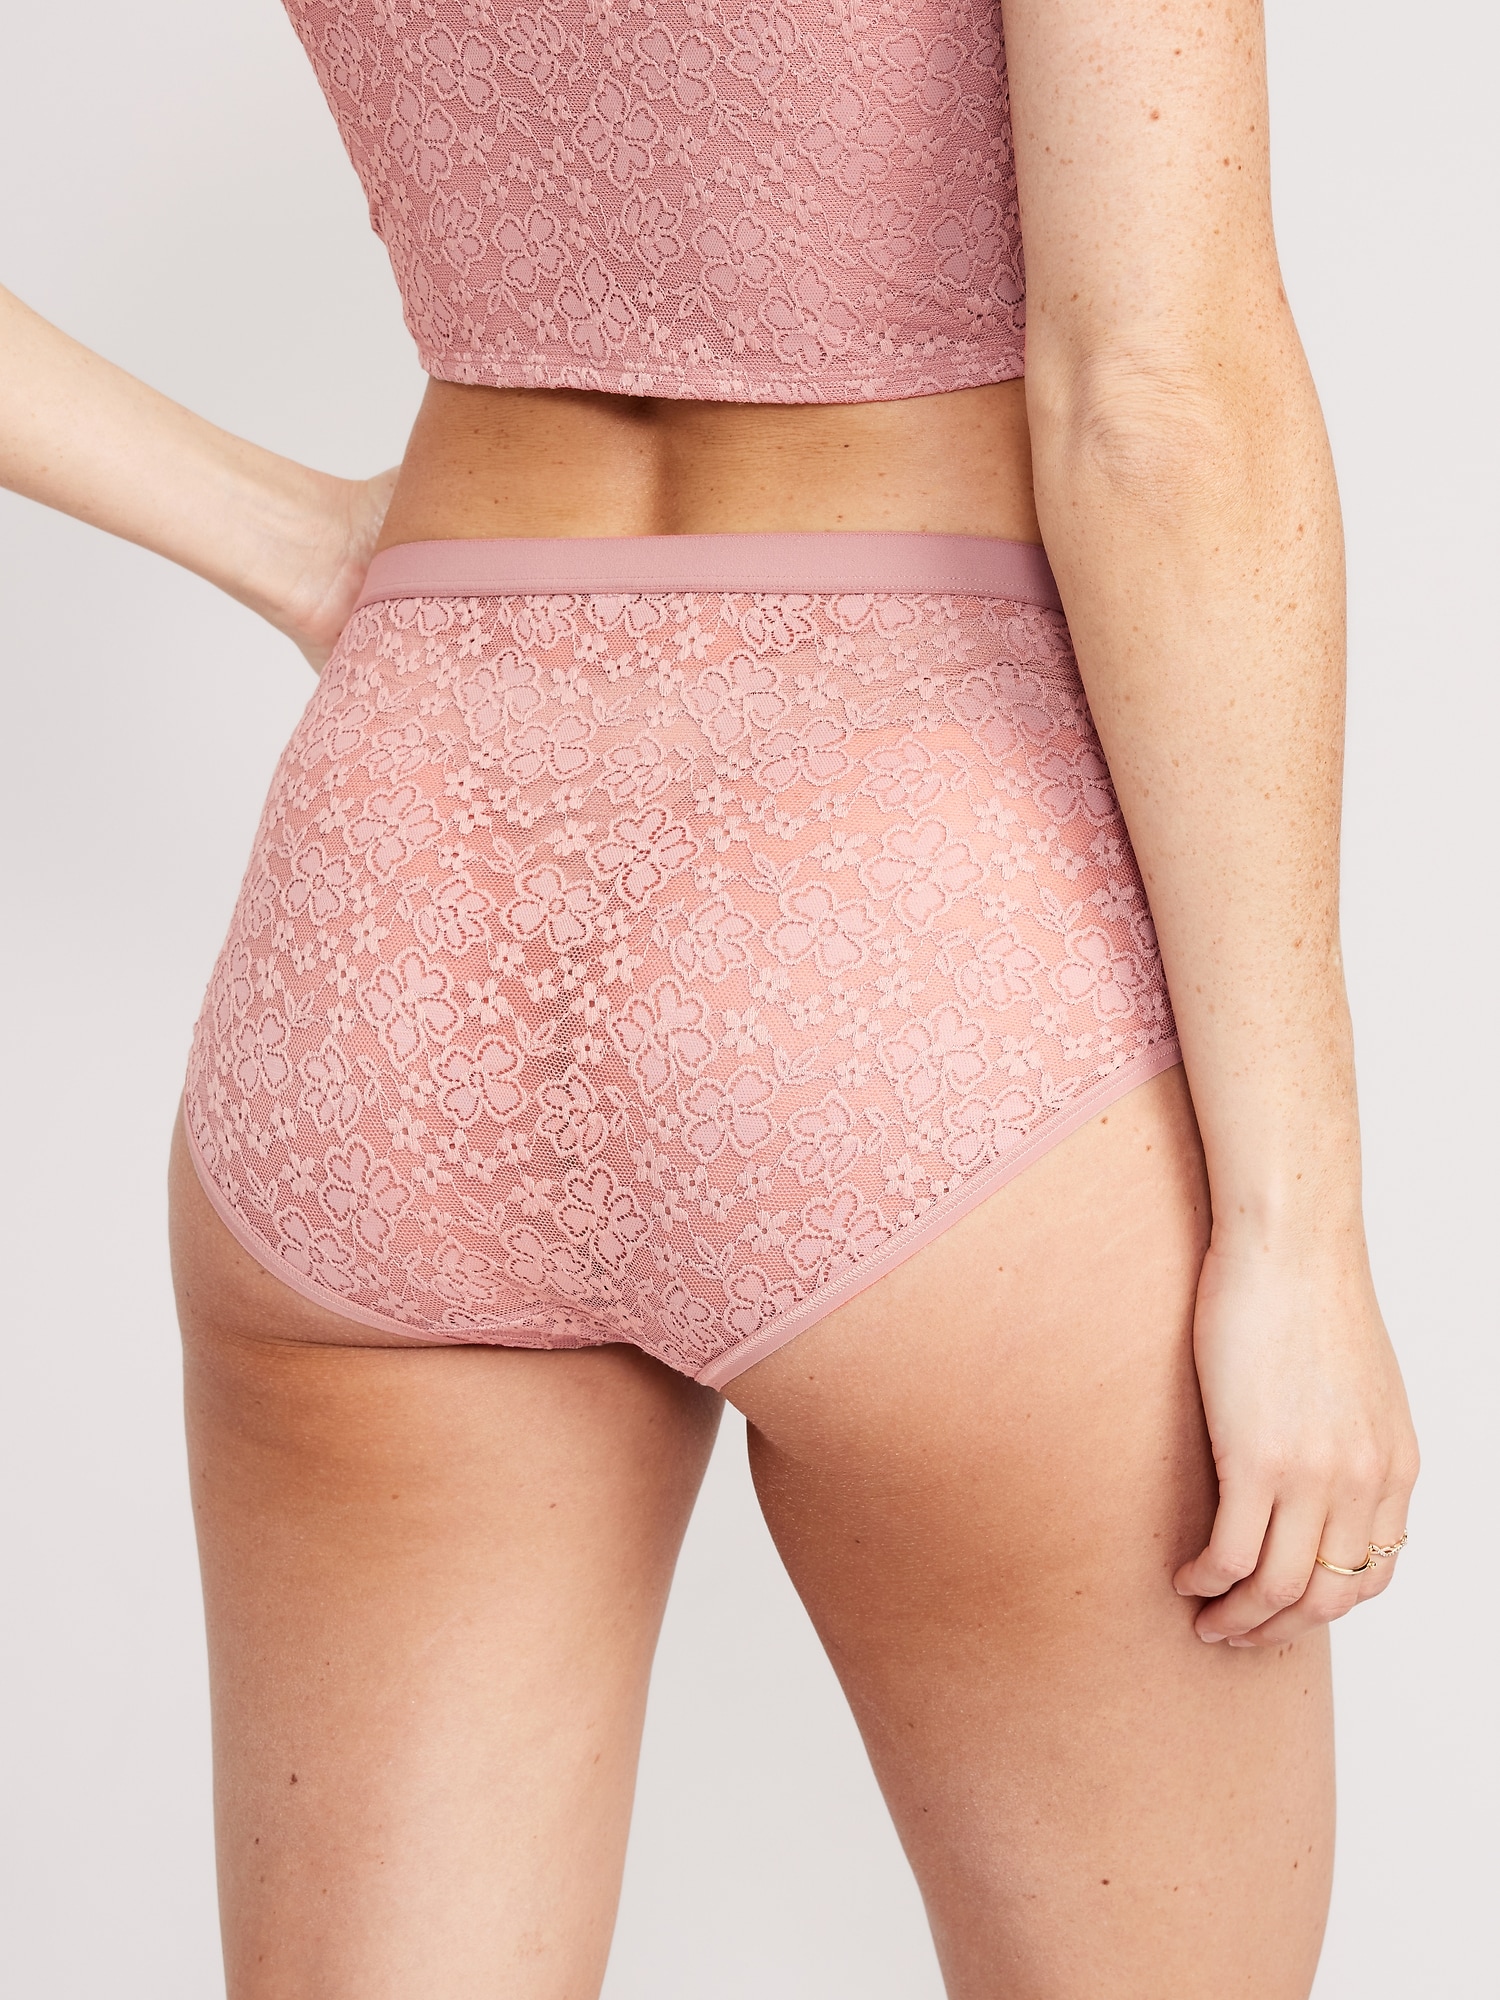 High-Waisted Lace Bikini Underwear